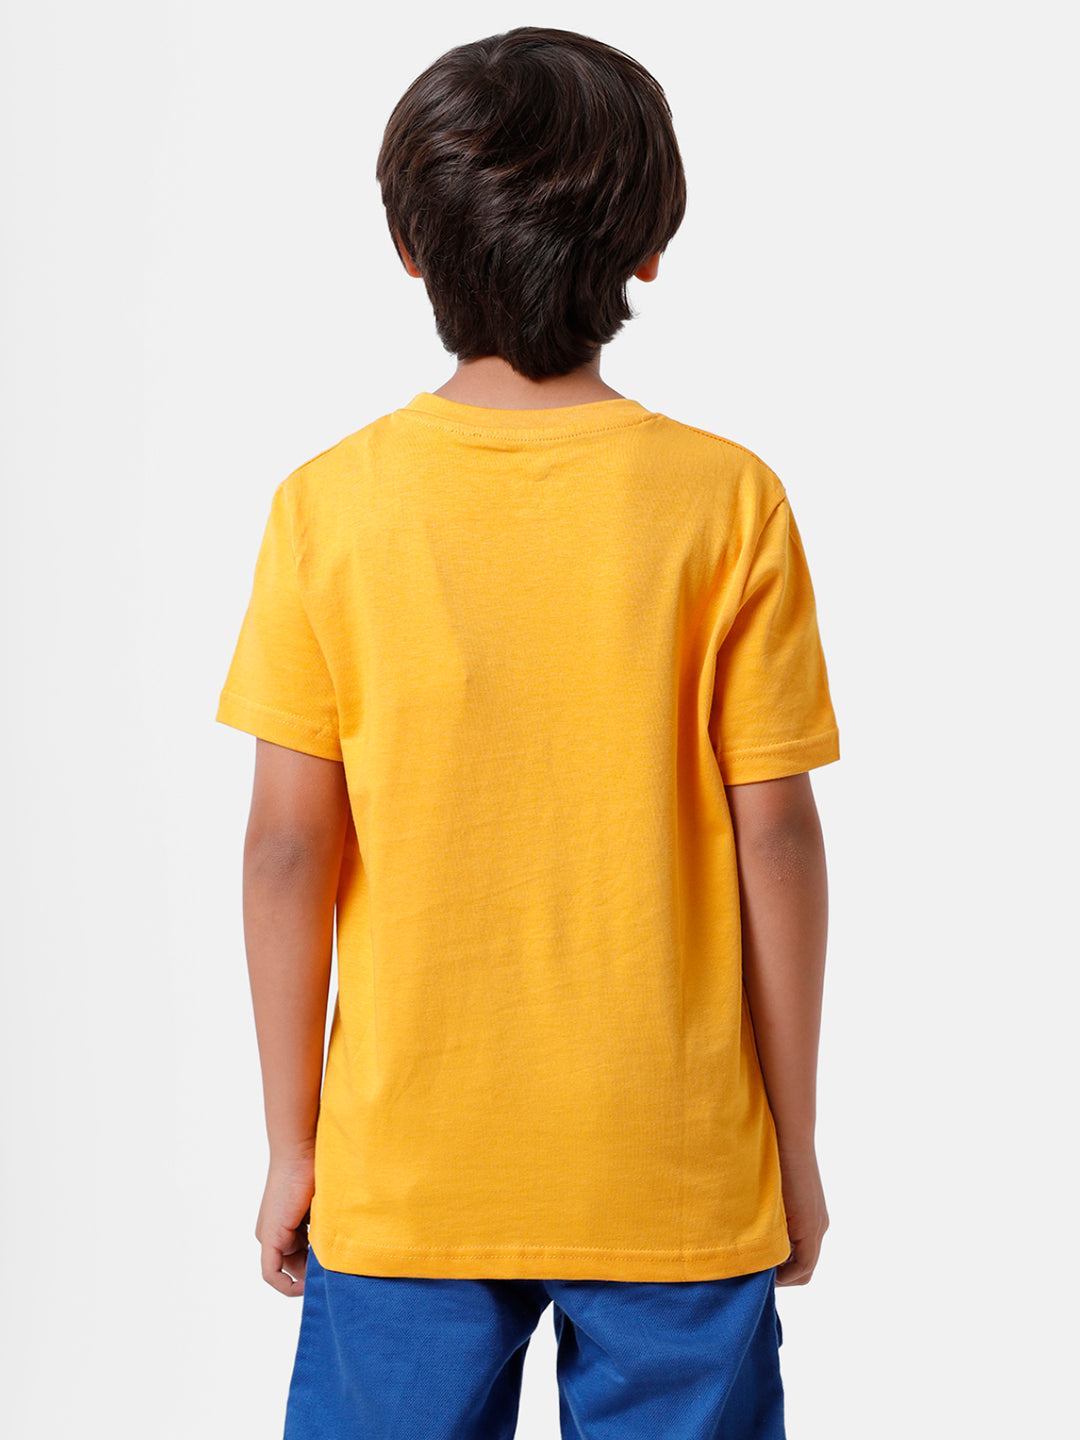 Kids - Boys T-Shirt Yellow - De Moza